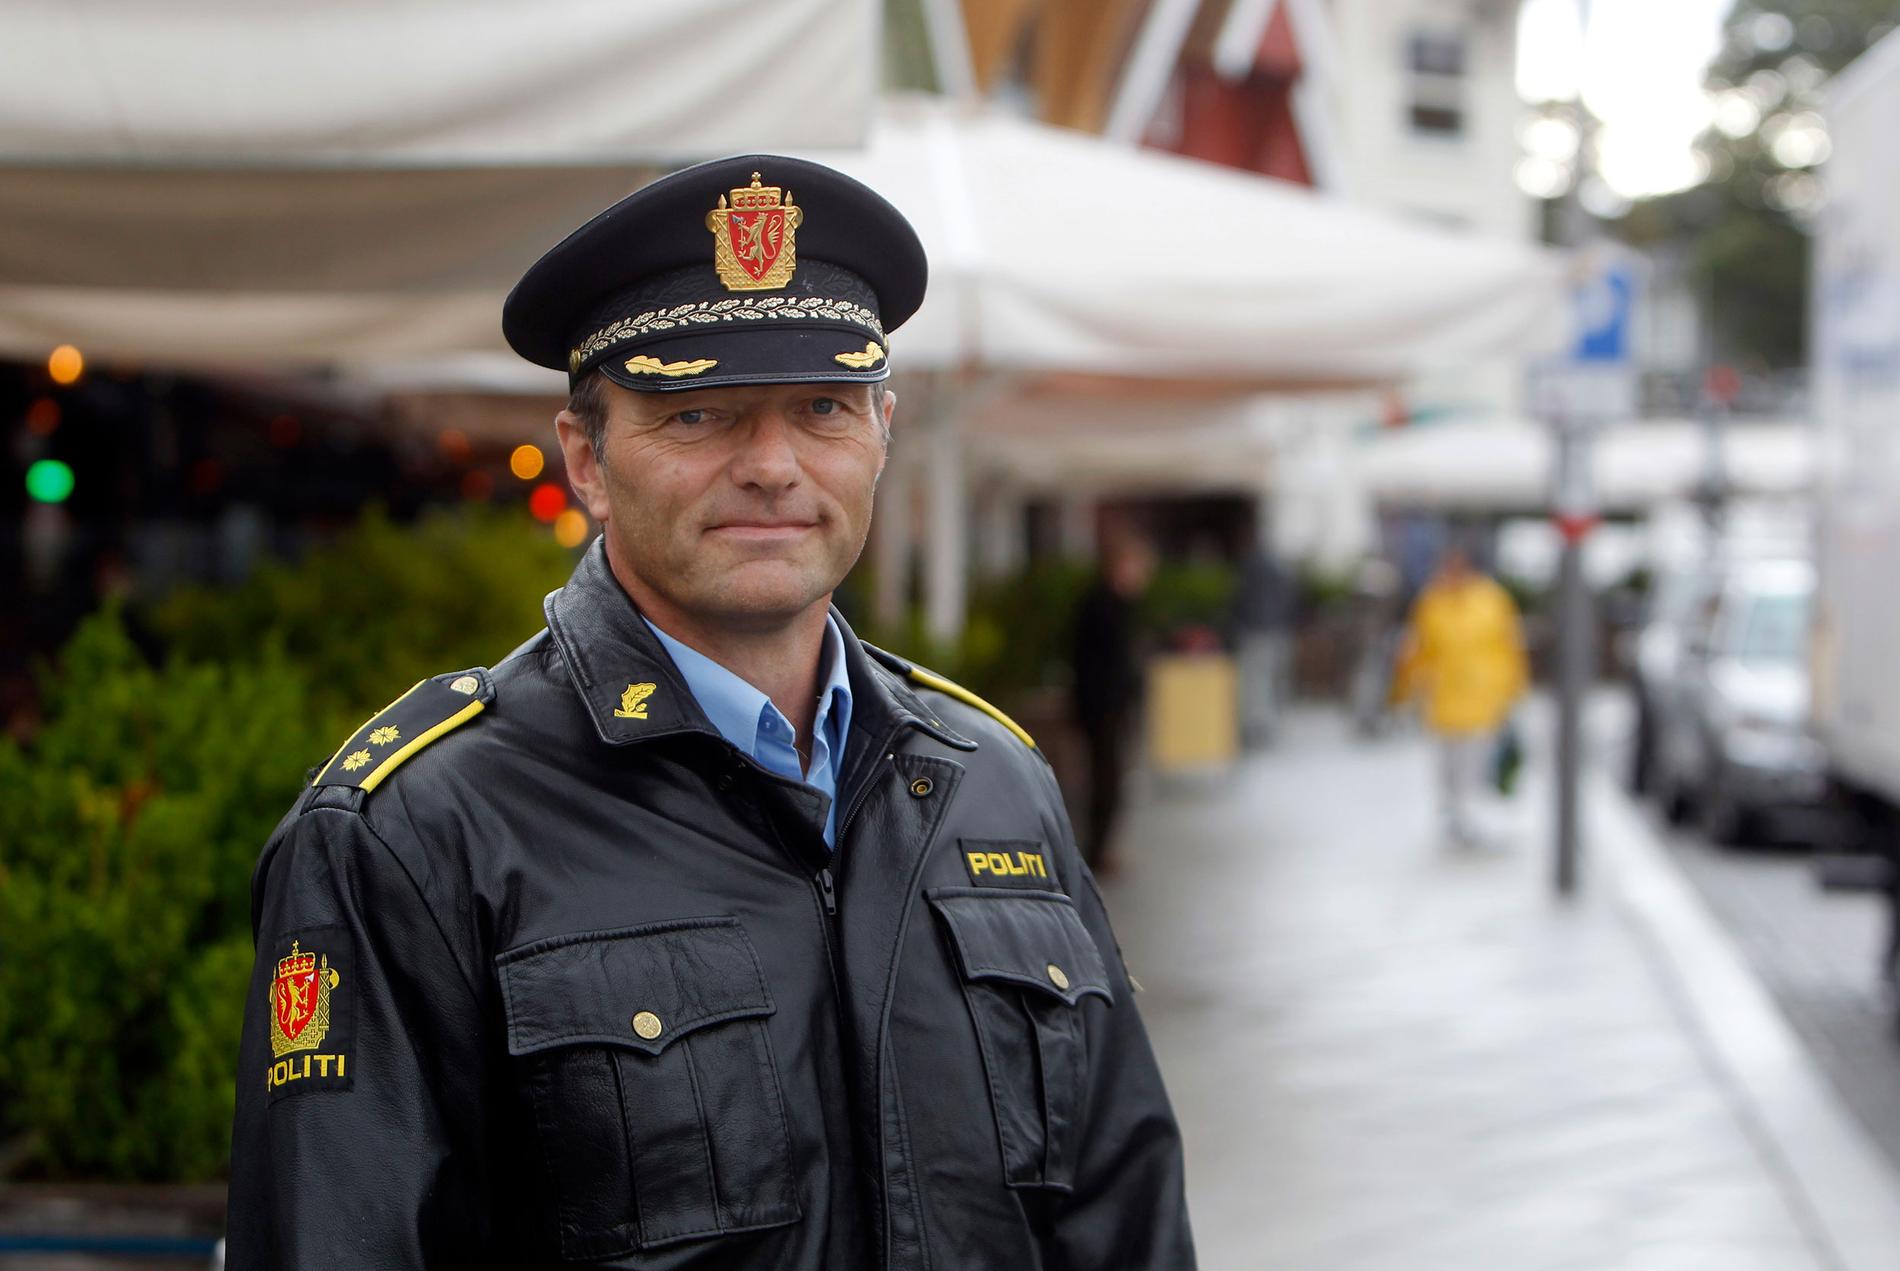   Ordensjef for politiet i Stavanger, Kristian Johansen.